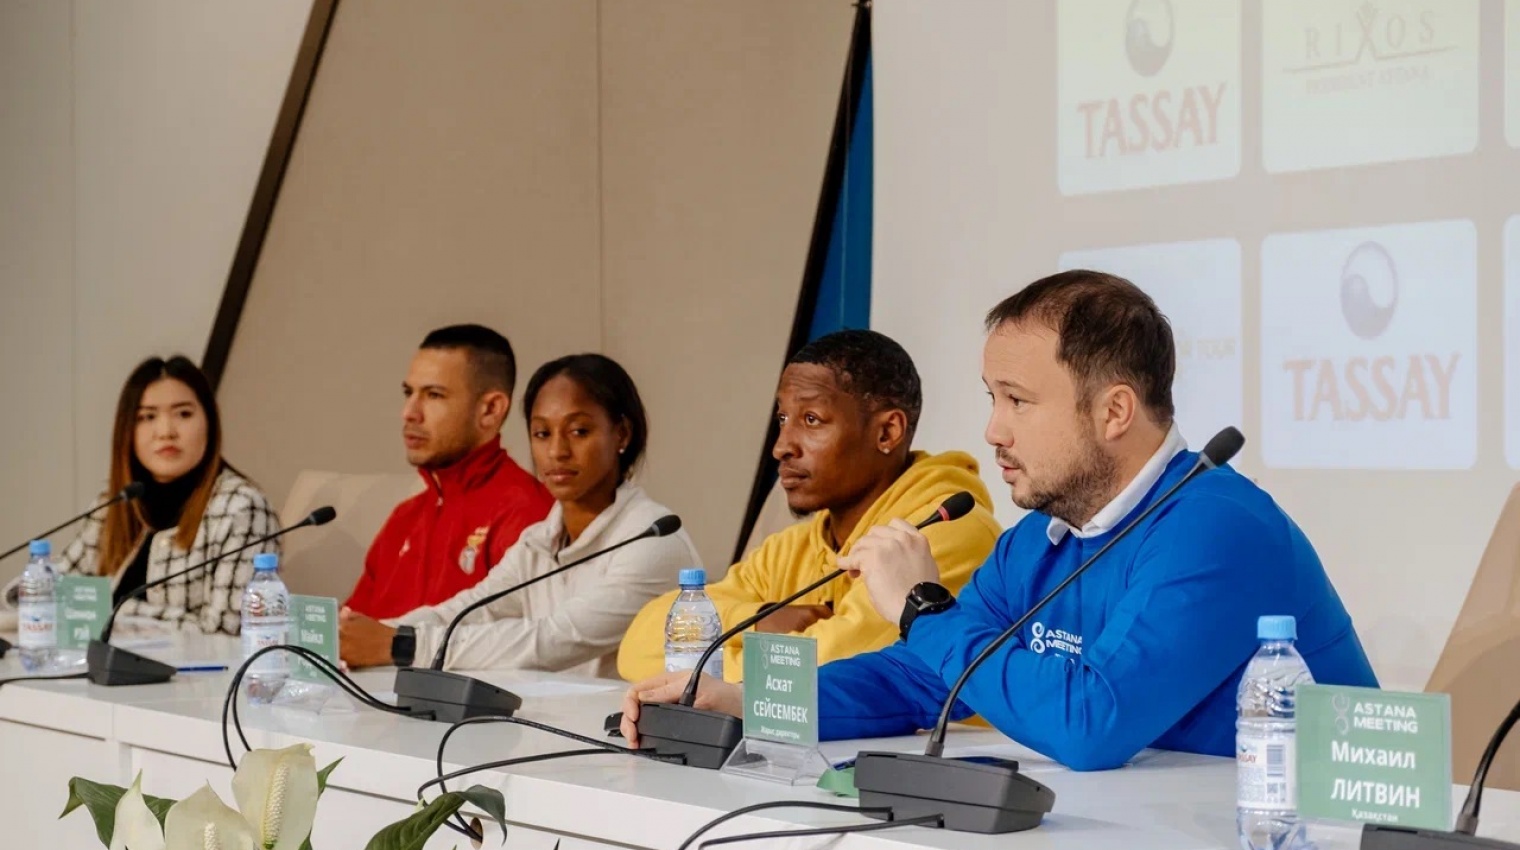 22 января в легкоатлетическом спортивном комплексе «QAZAQSTAN» состоялась пресс-конференция международного турнира по легкой атлетике серебряного уровня Astana Meeting World Indoor Tour.